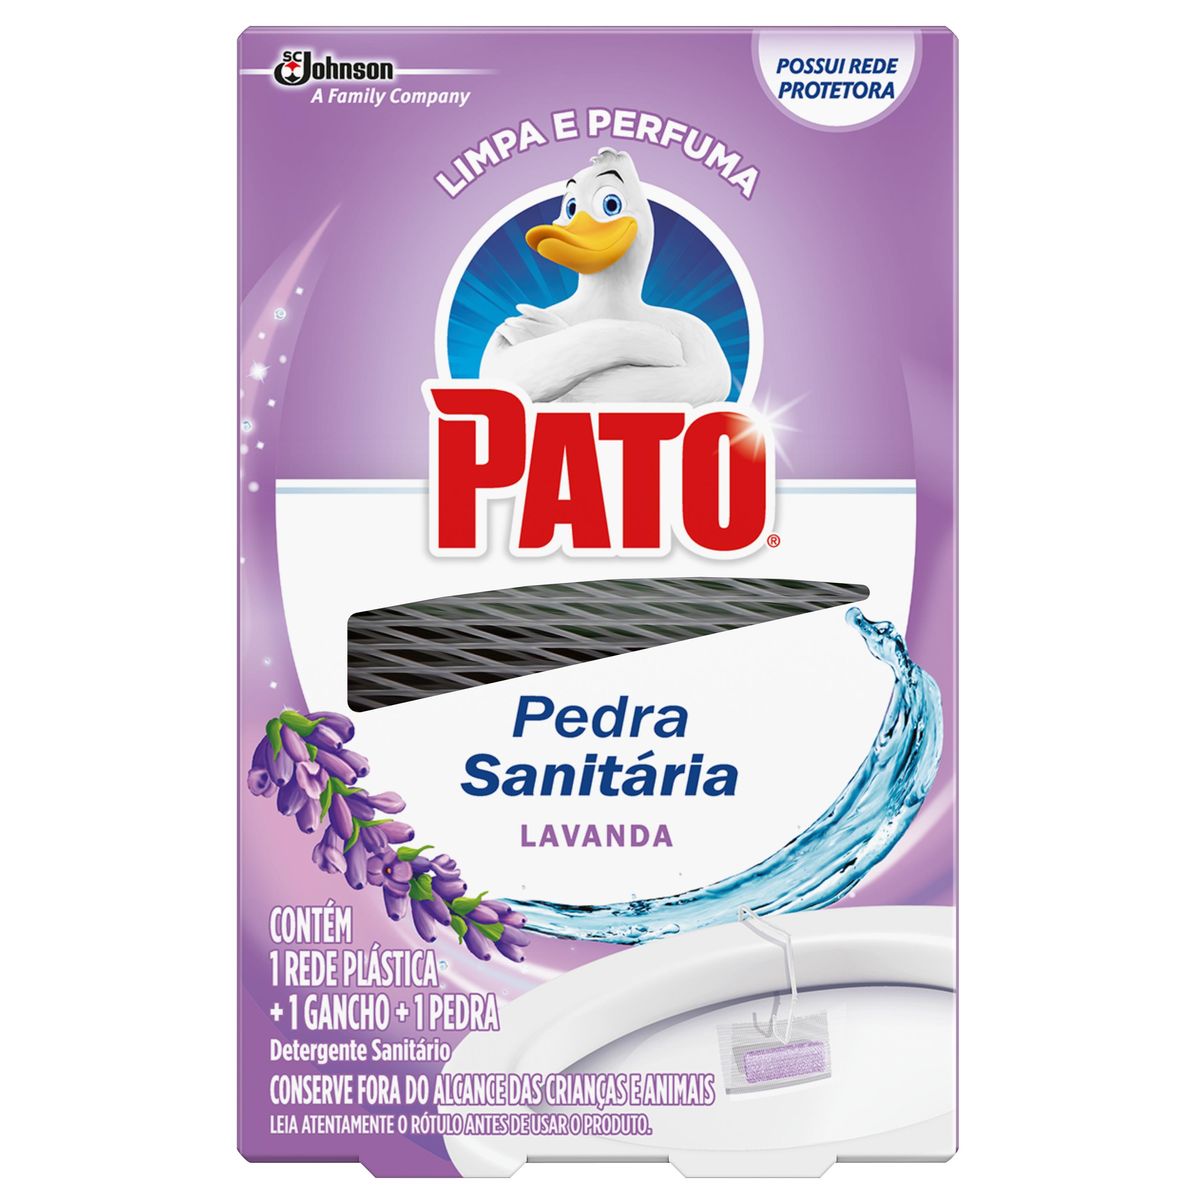 Detergente Sanitário Pato Pedra Lavanda